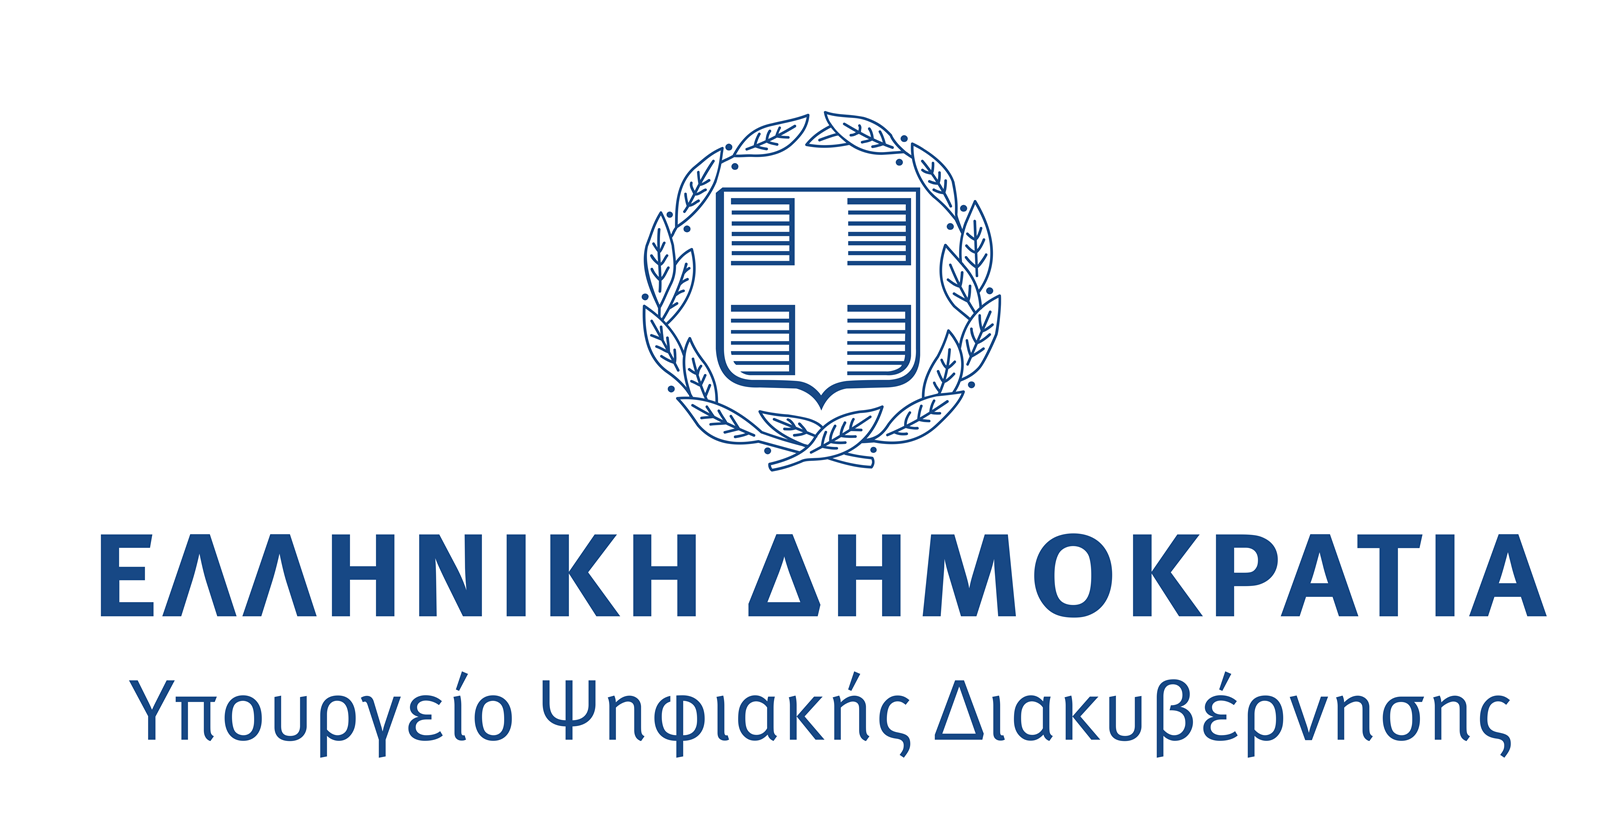 Μέσω gov.gr οι καταγγελίες στη Δίωξη Ηλεκτρονικού Εγκλήματος